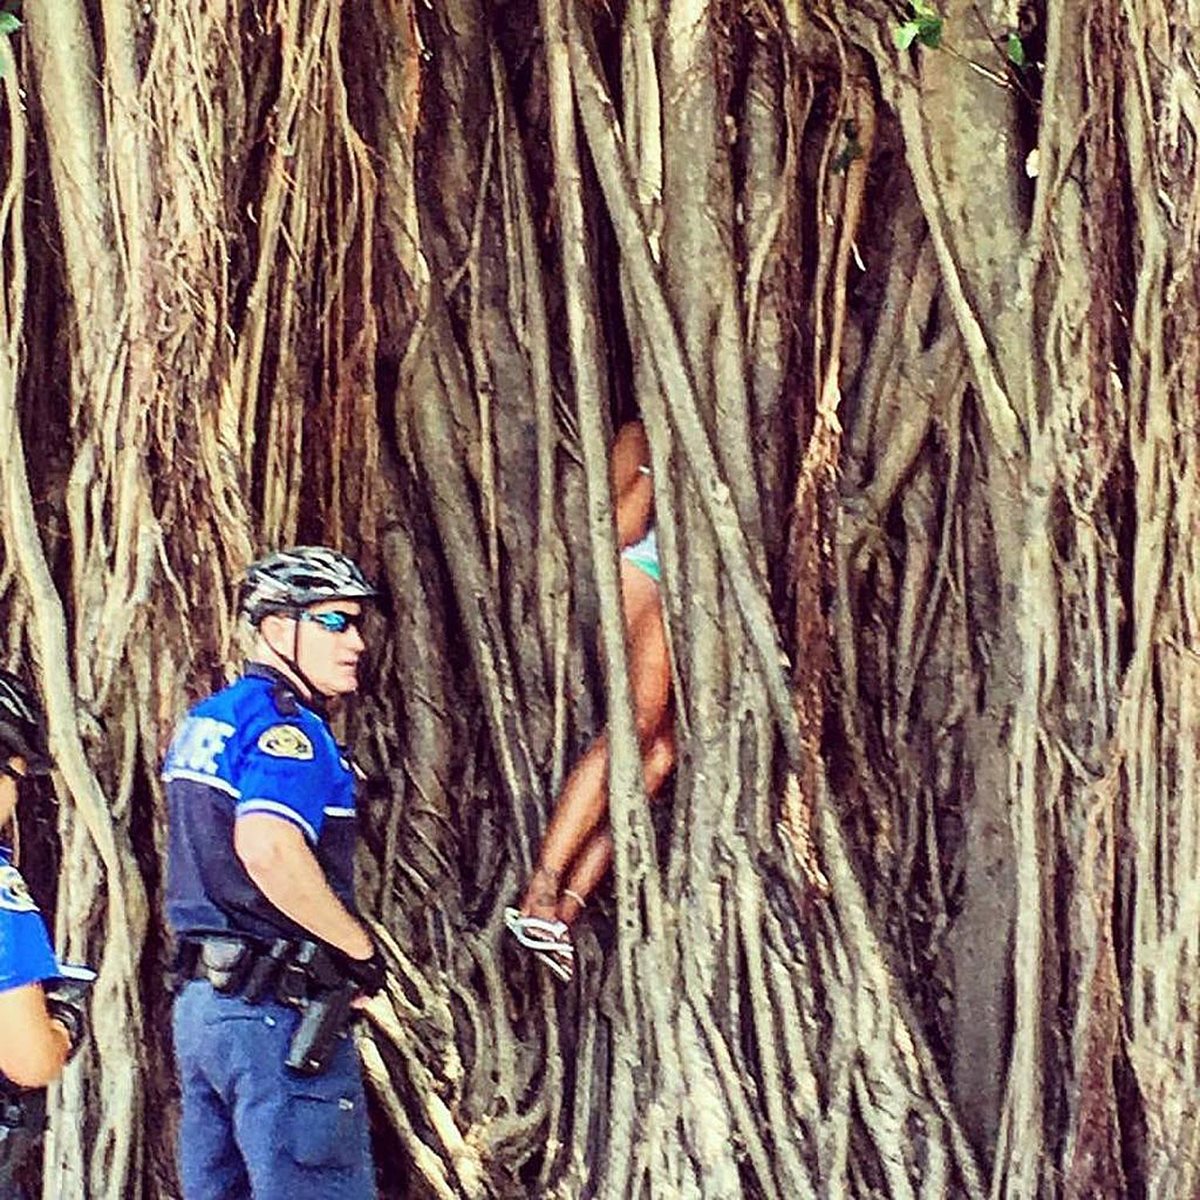 La mujer quedó atrapada entre las raíces del peculiar árbol. (Foto Prensa Libre: EFE).